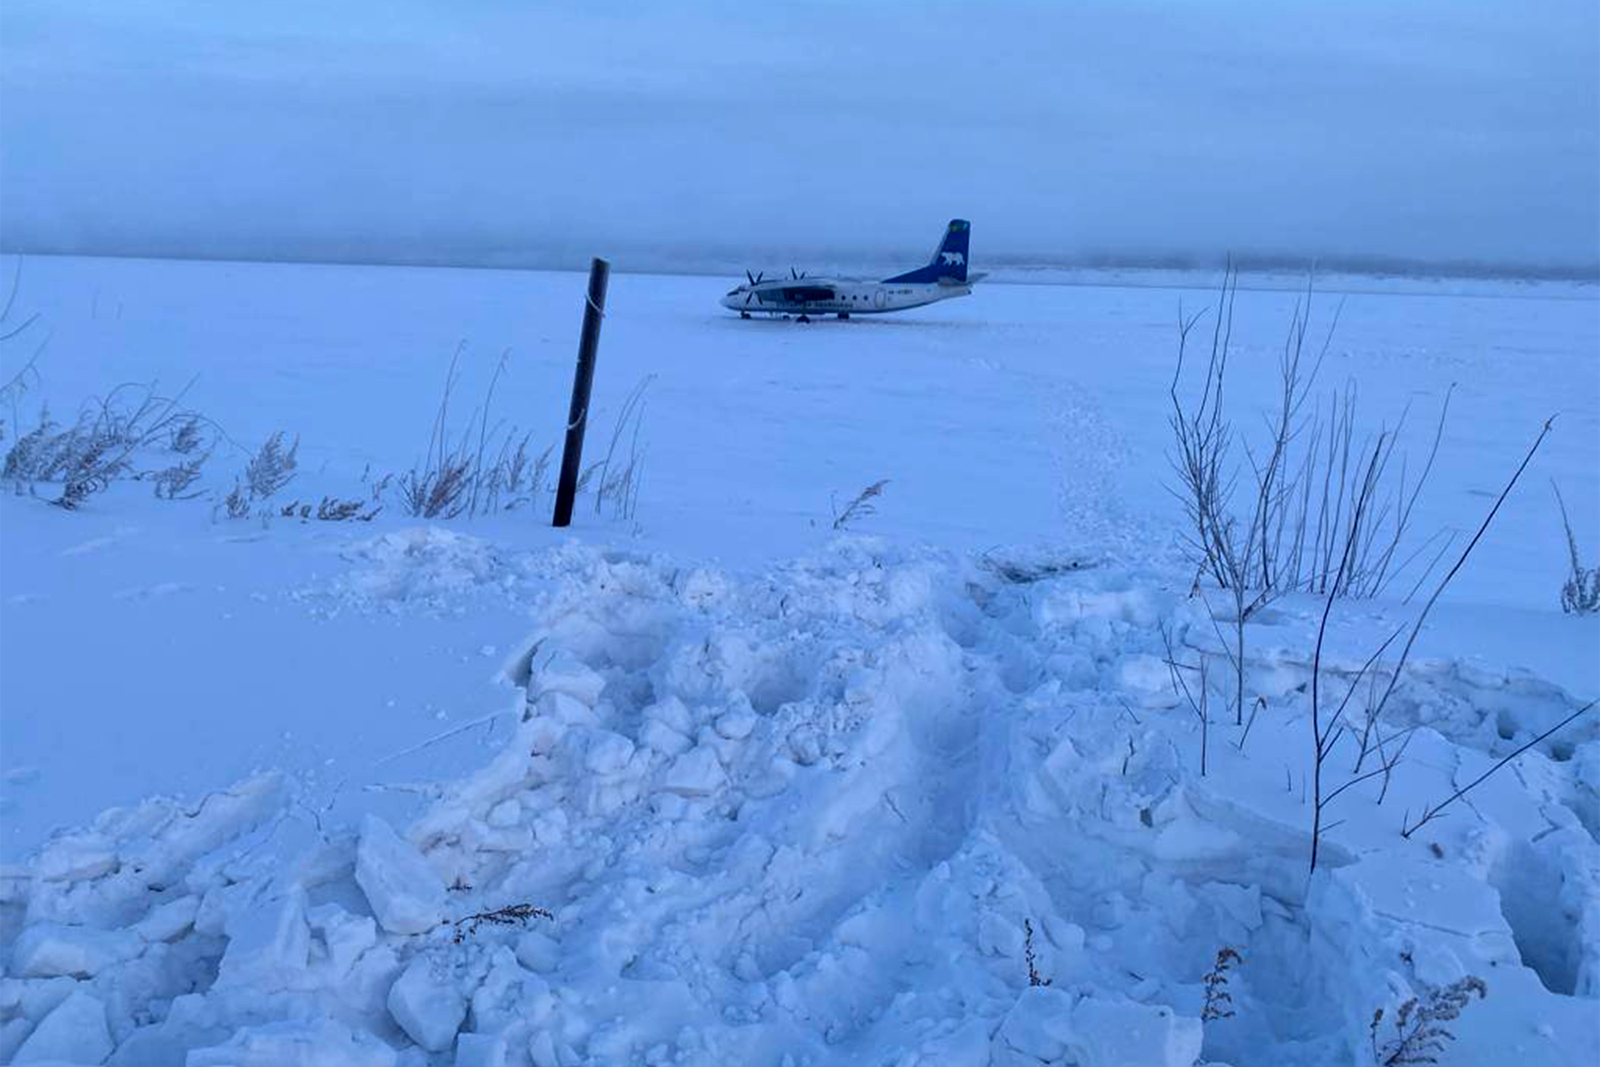 El AN-24de Polar Airlines ha quedado parado a unos 200 metros de la orilla.